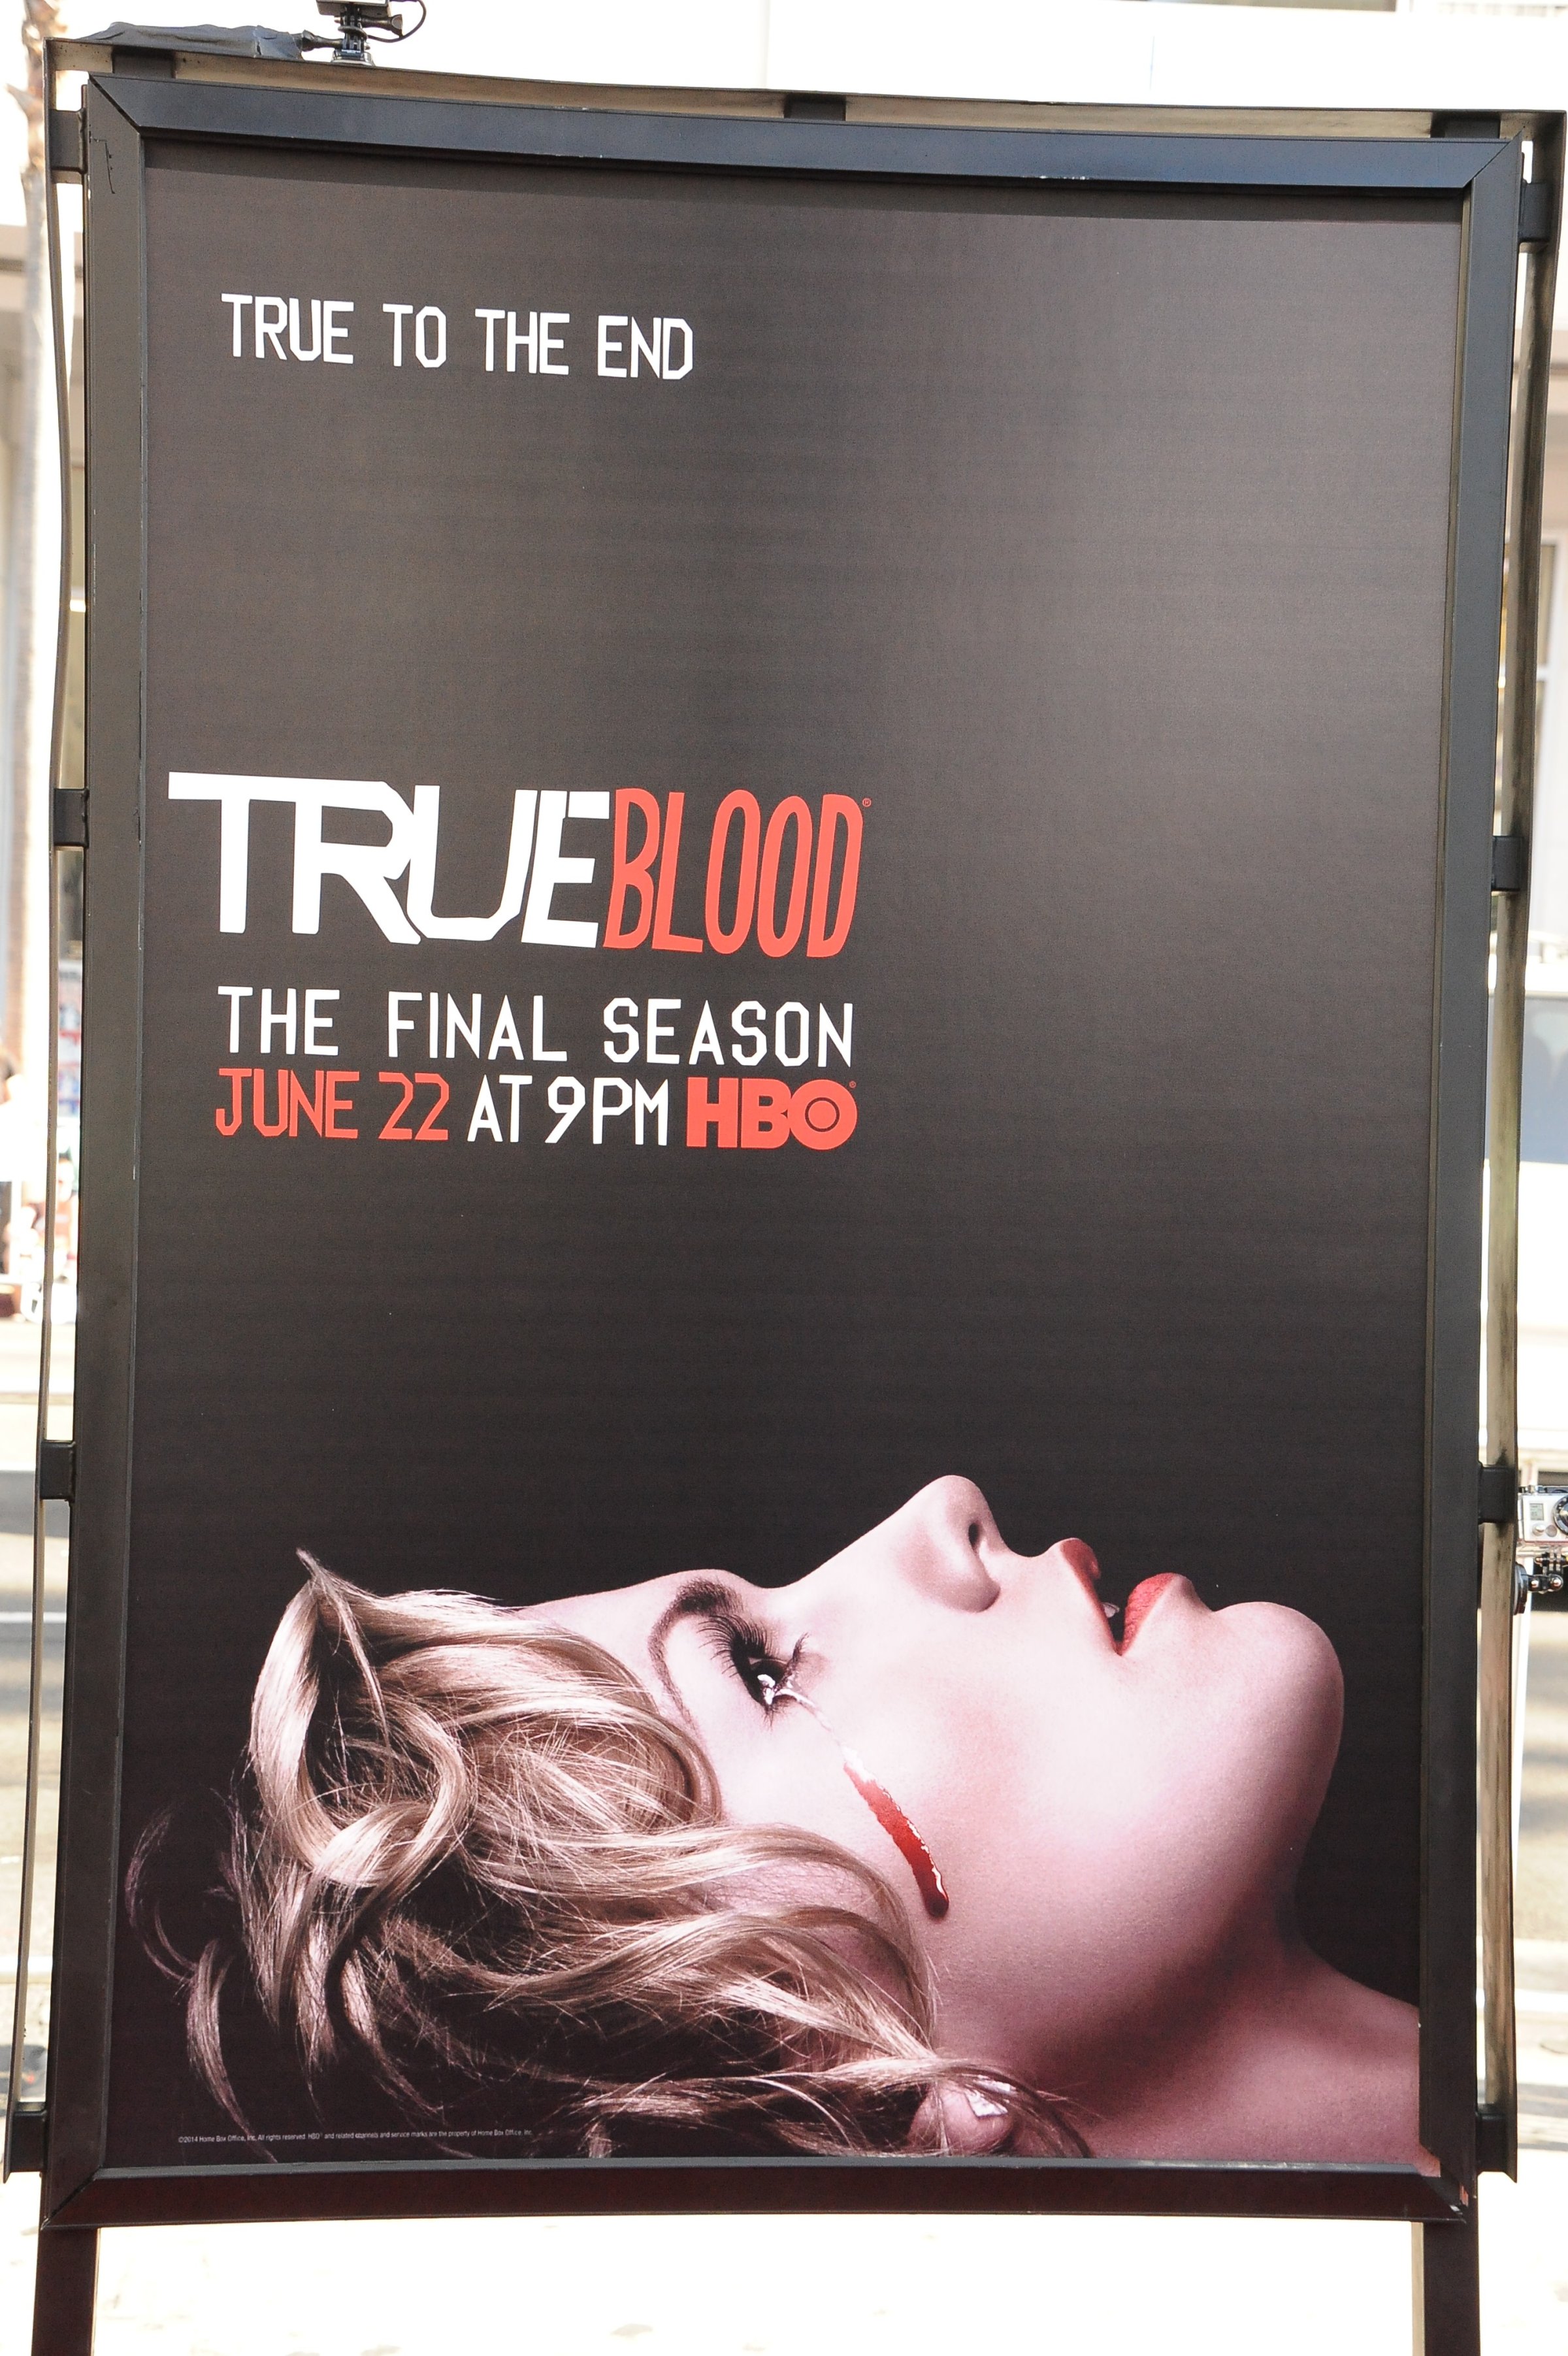 USA - True Blood - Season 7 premiere in Los Angeles.